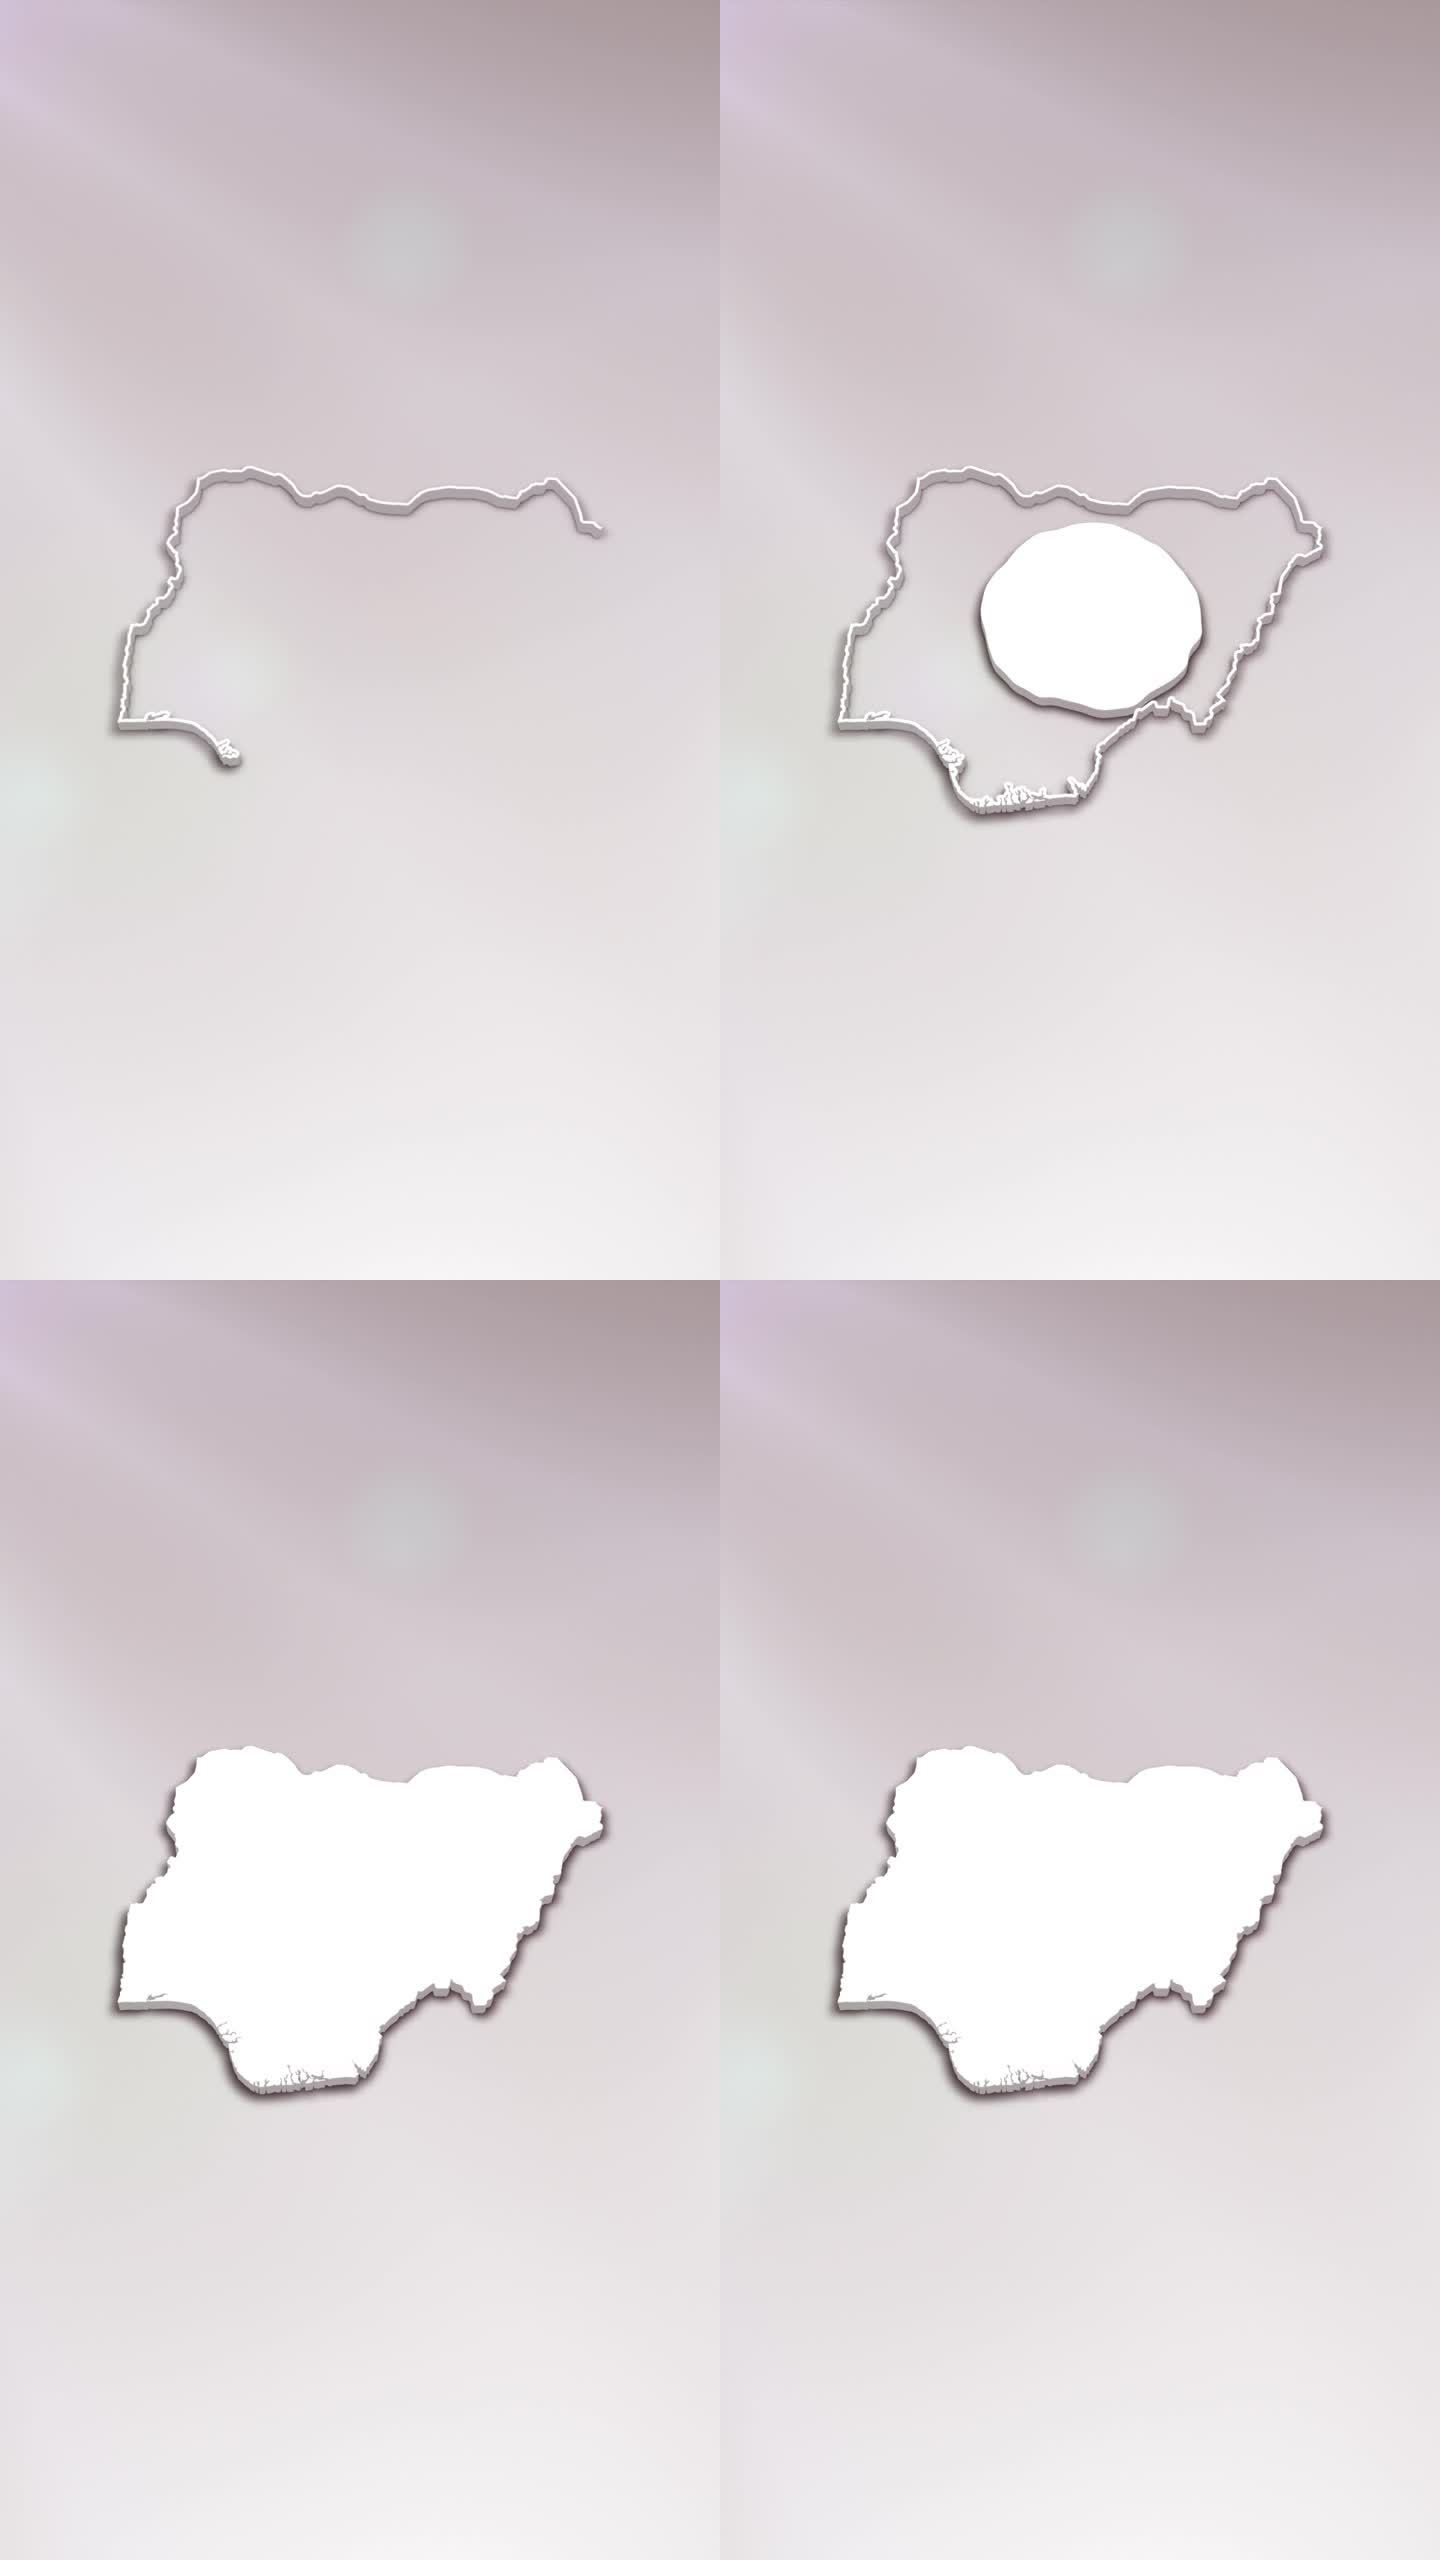 尼日利亚3D地图介绍